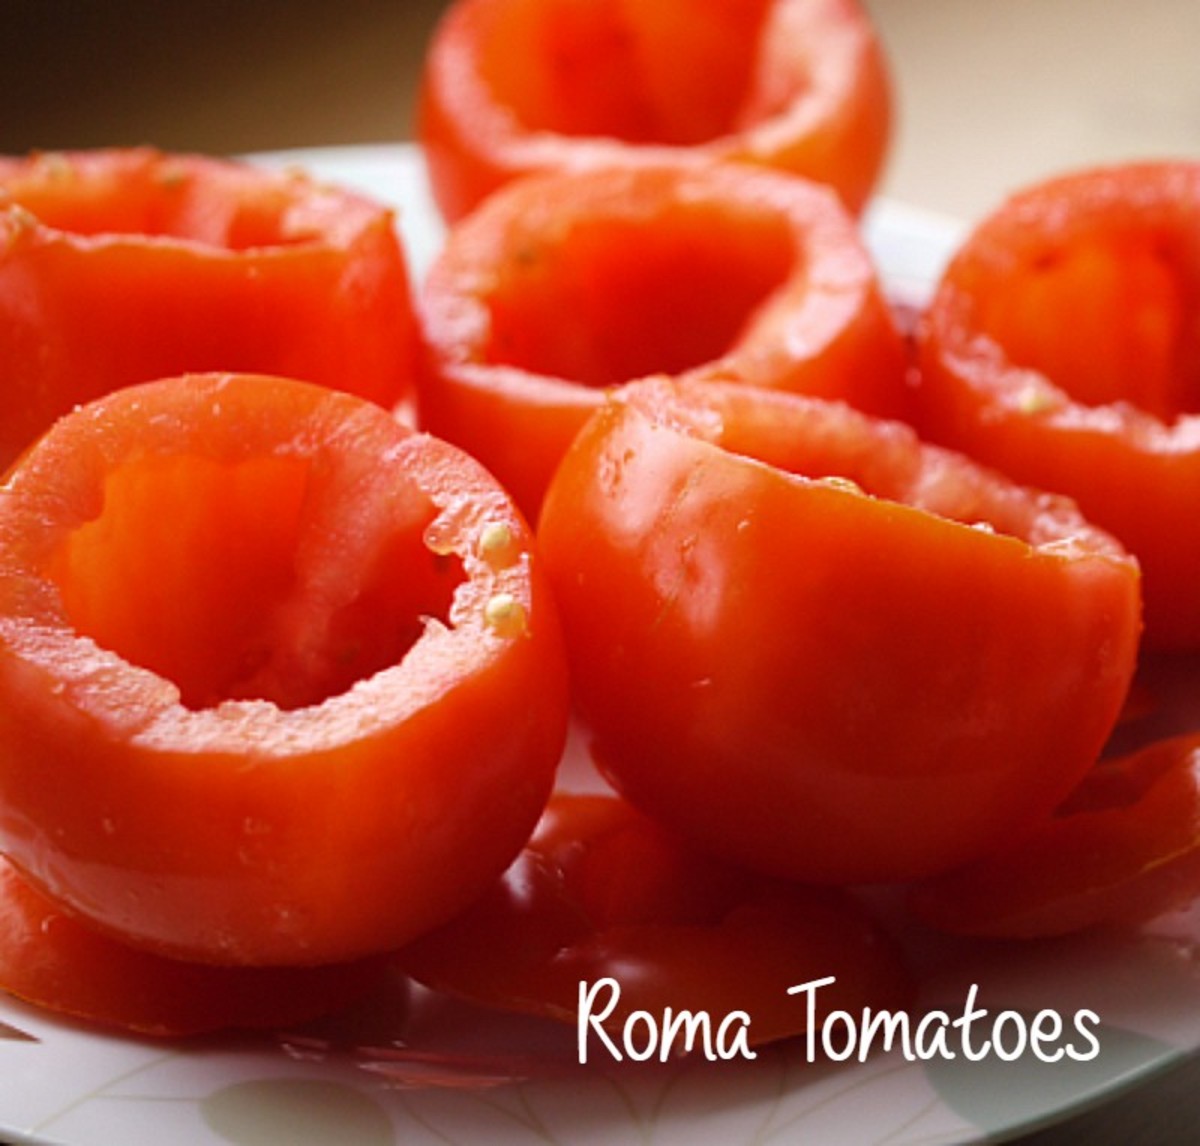 Slow roasted Roma Tomatoes